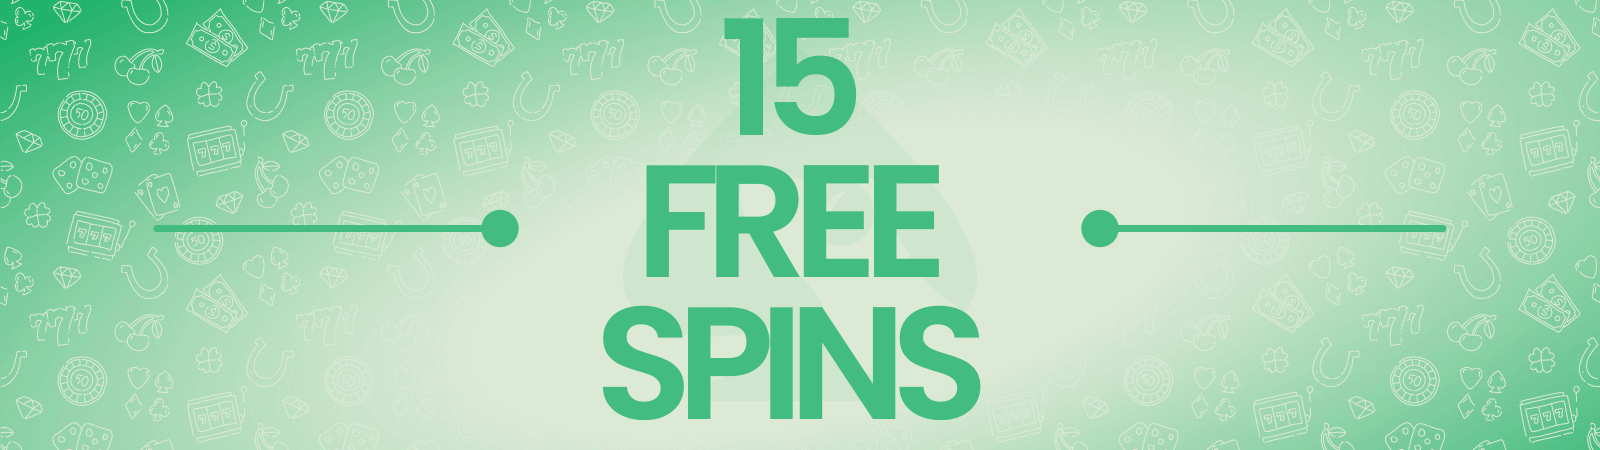 15 free spins no deposit UK